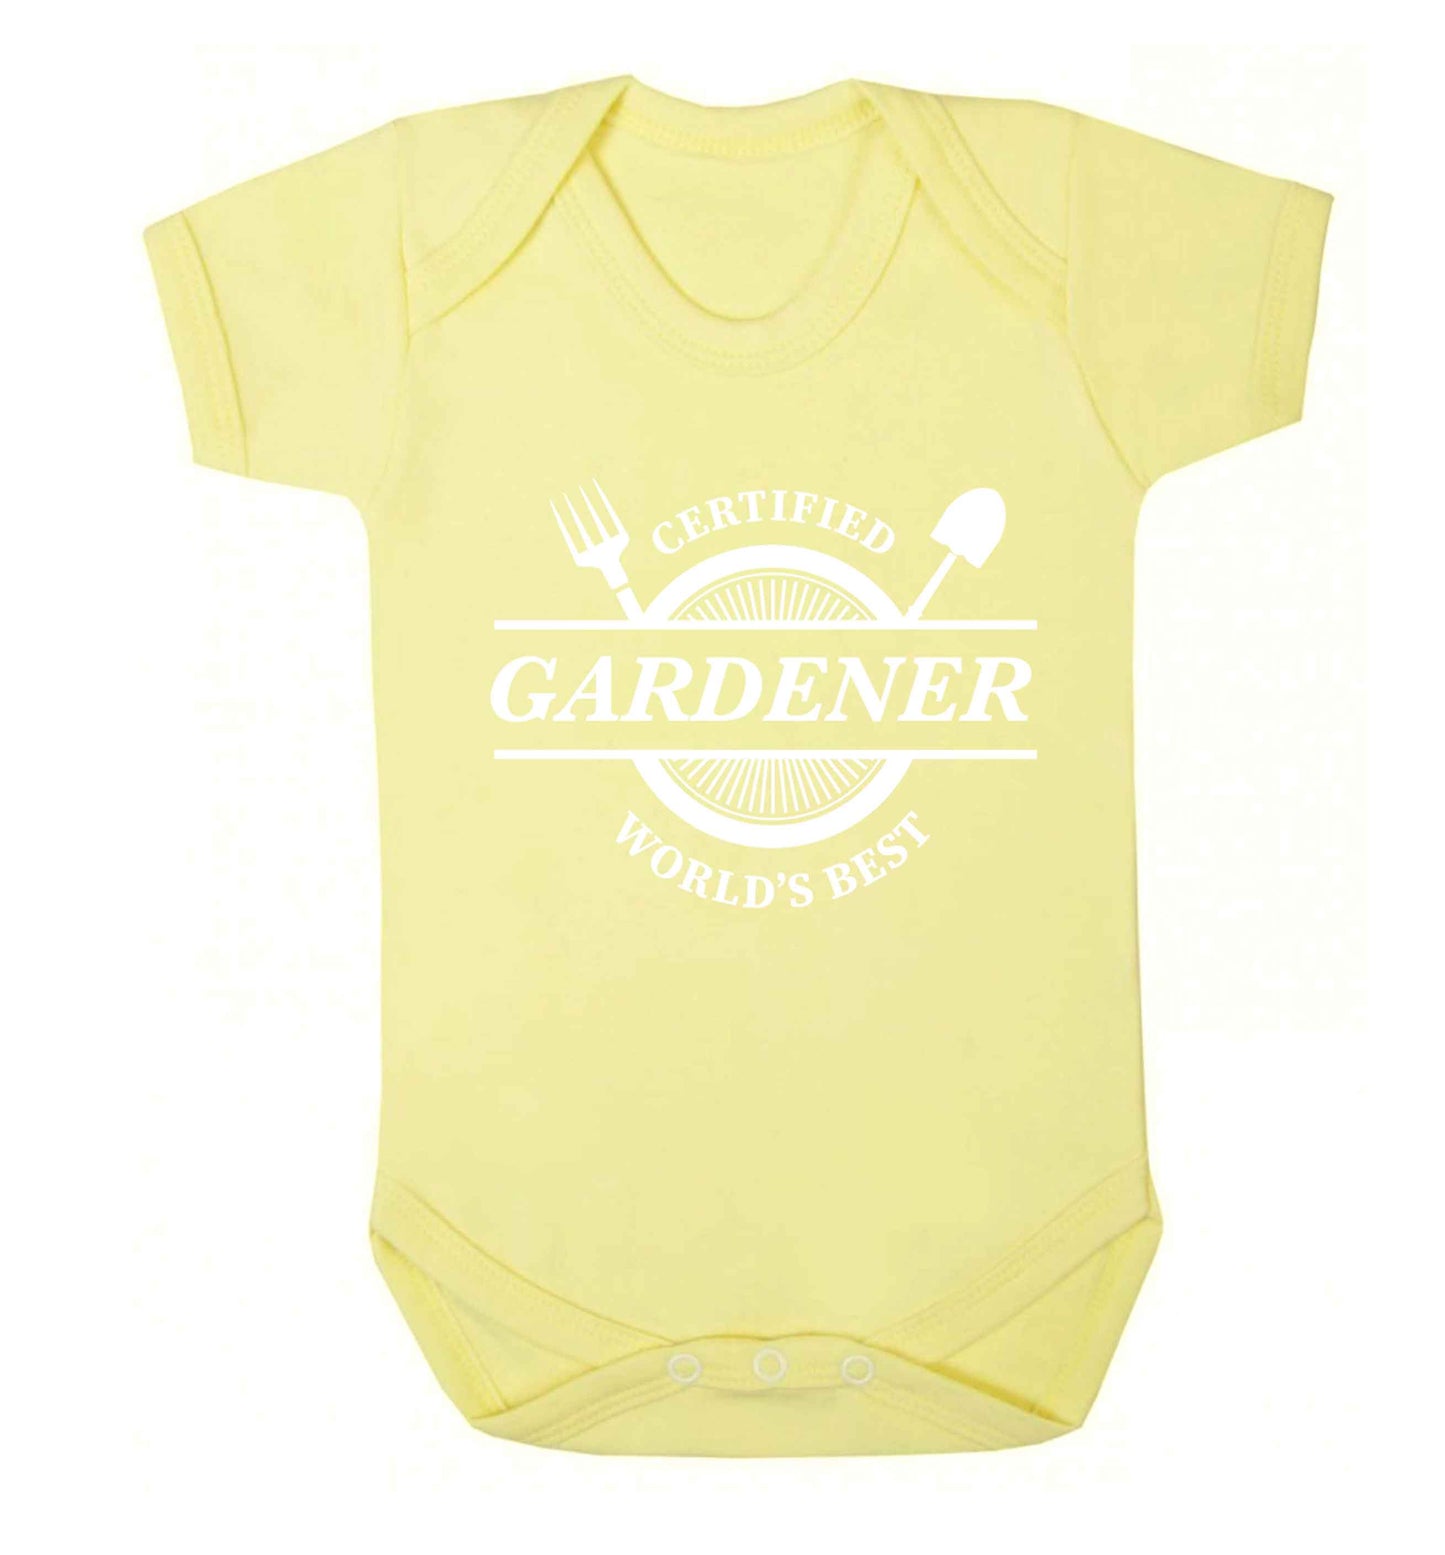 Certified gardener worlds best Baby Vest pale yellow 18-24 months